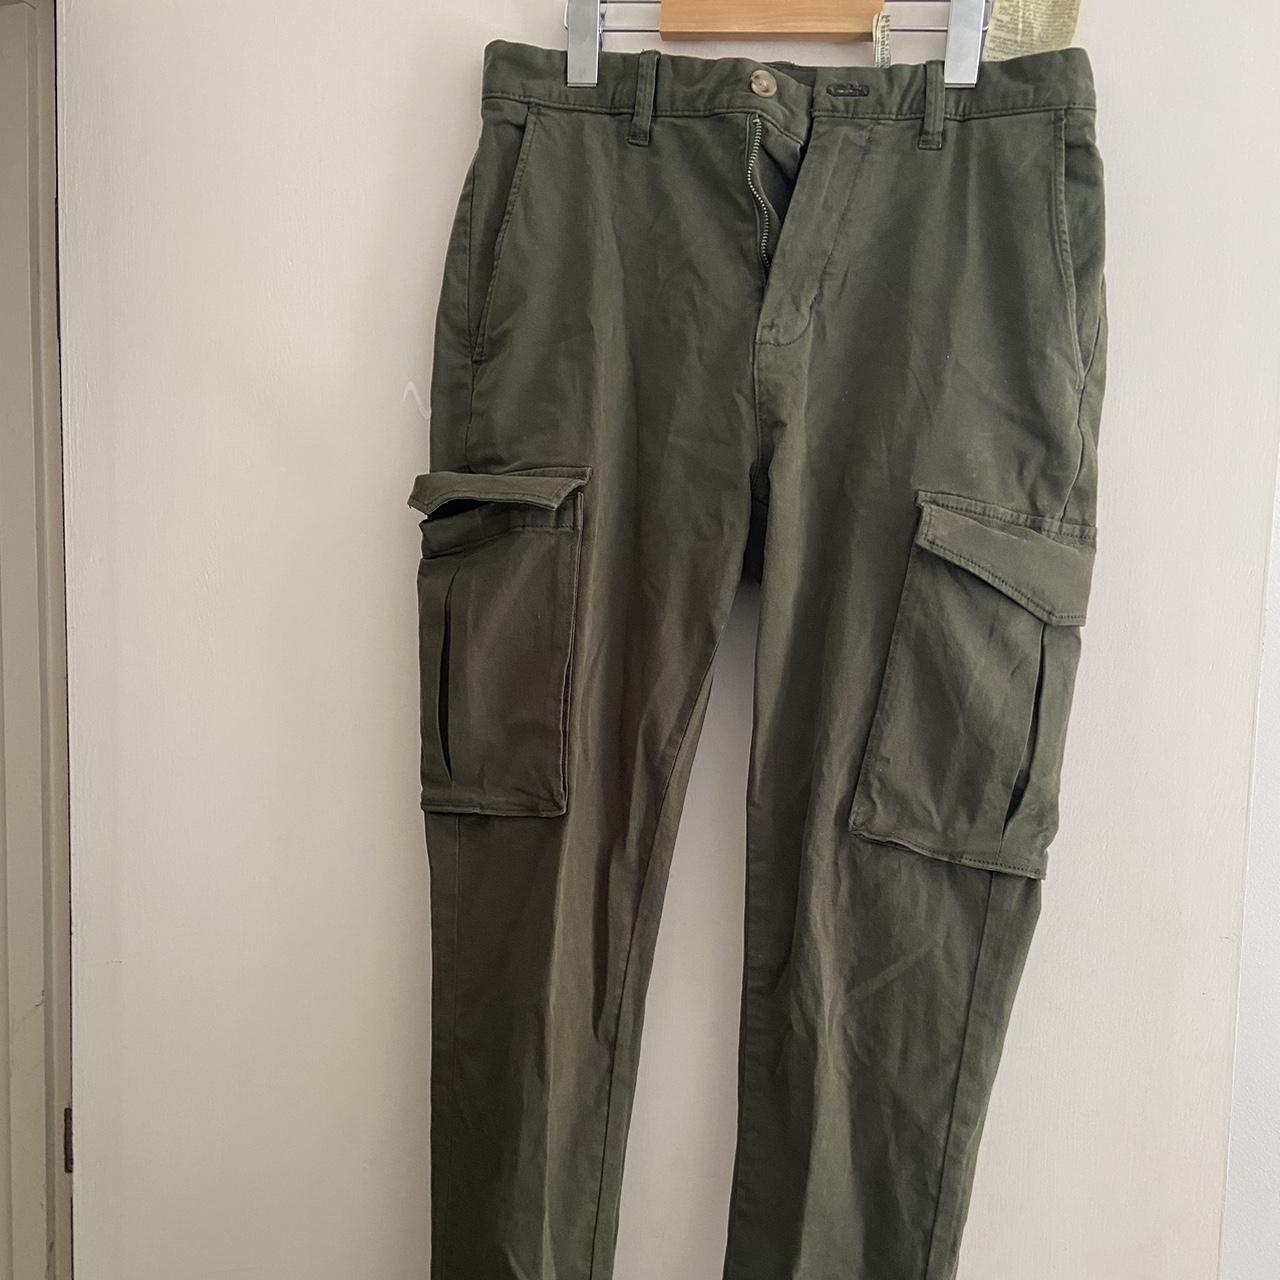 Zara Green Khaki Cargo Pants with pockets #zara #cargo - Depop